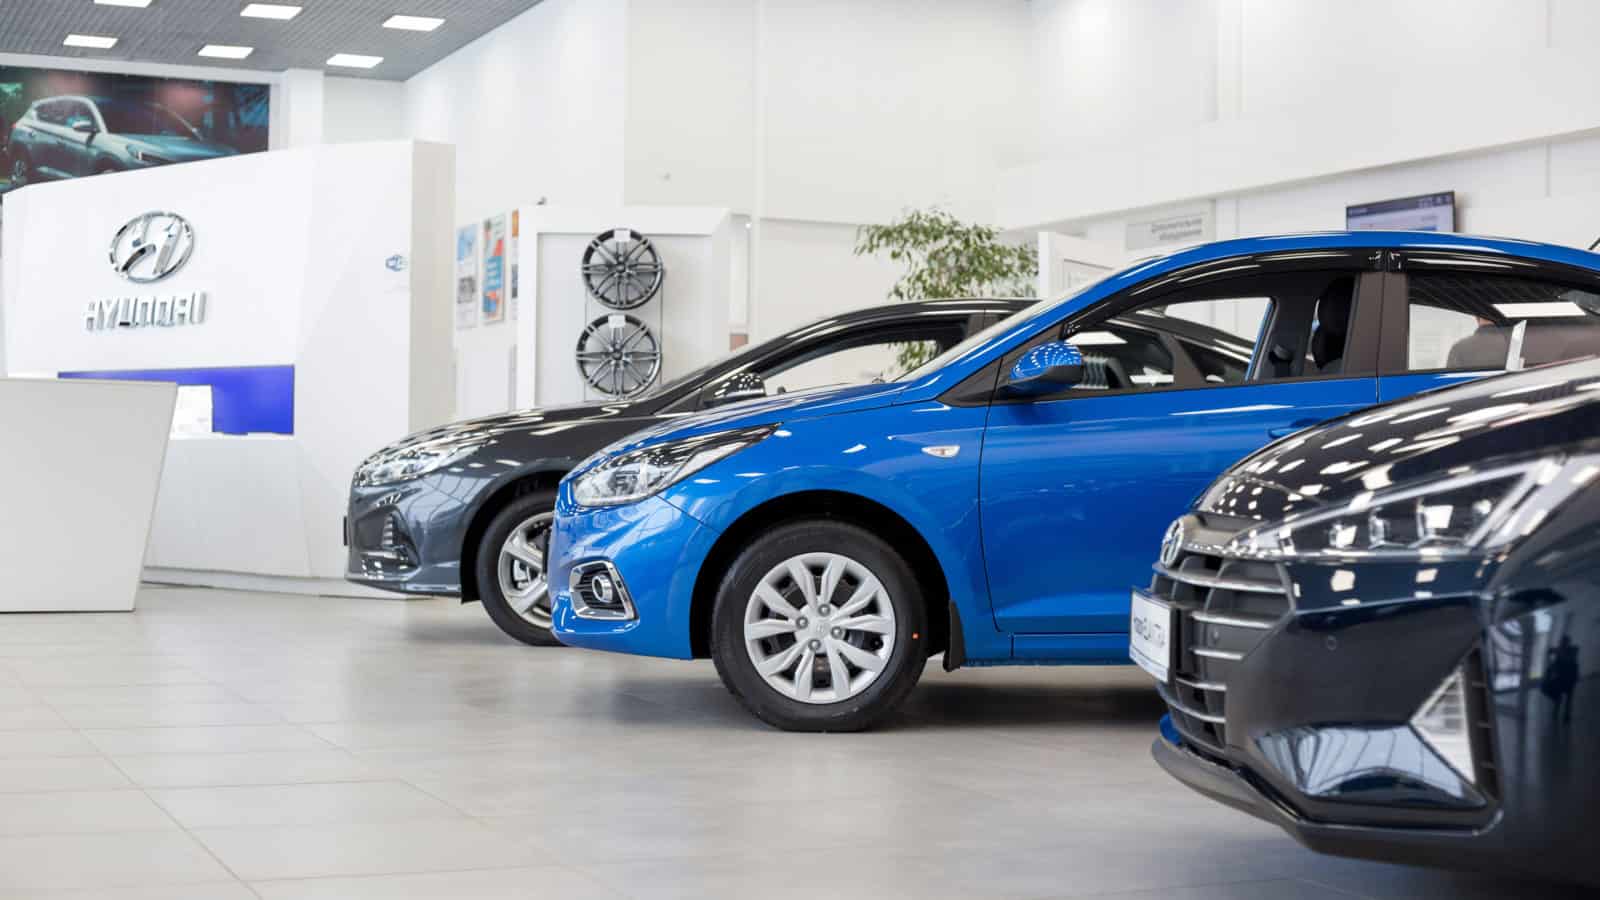 Hyundai dealership